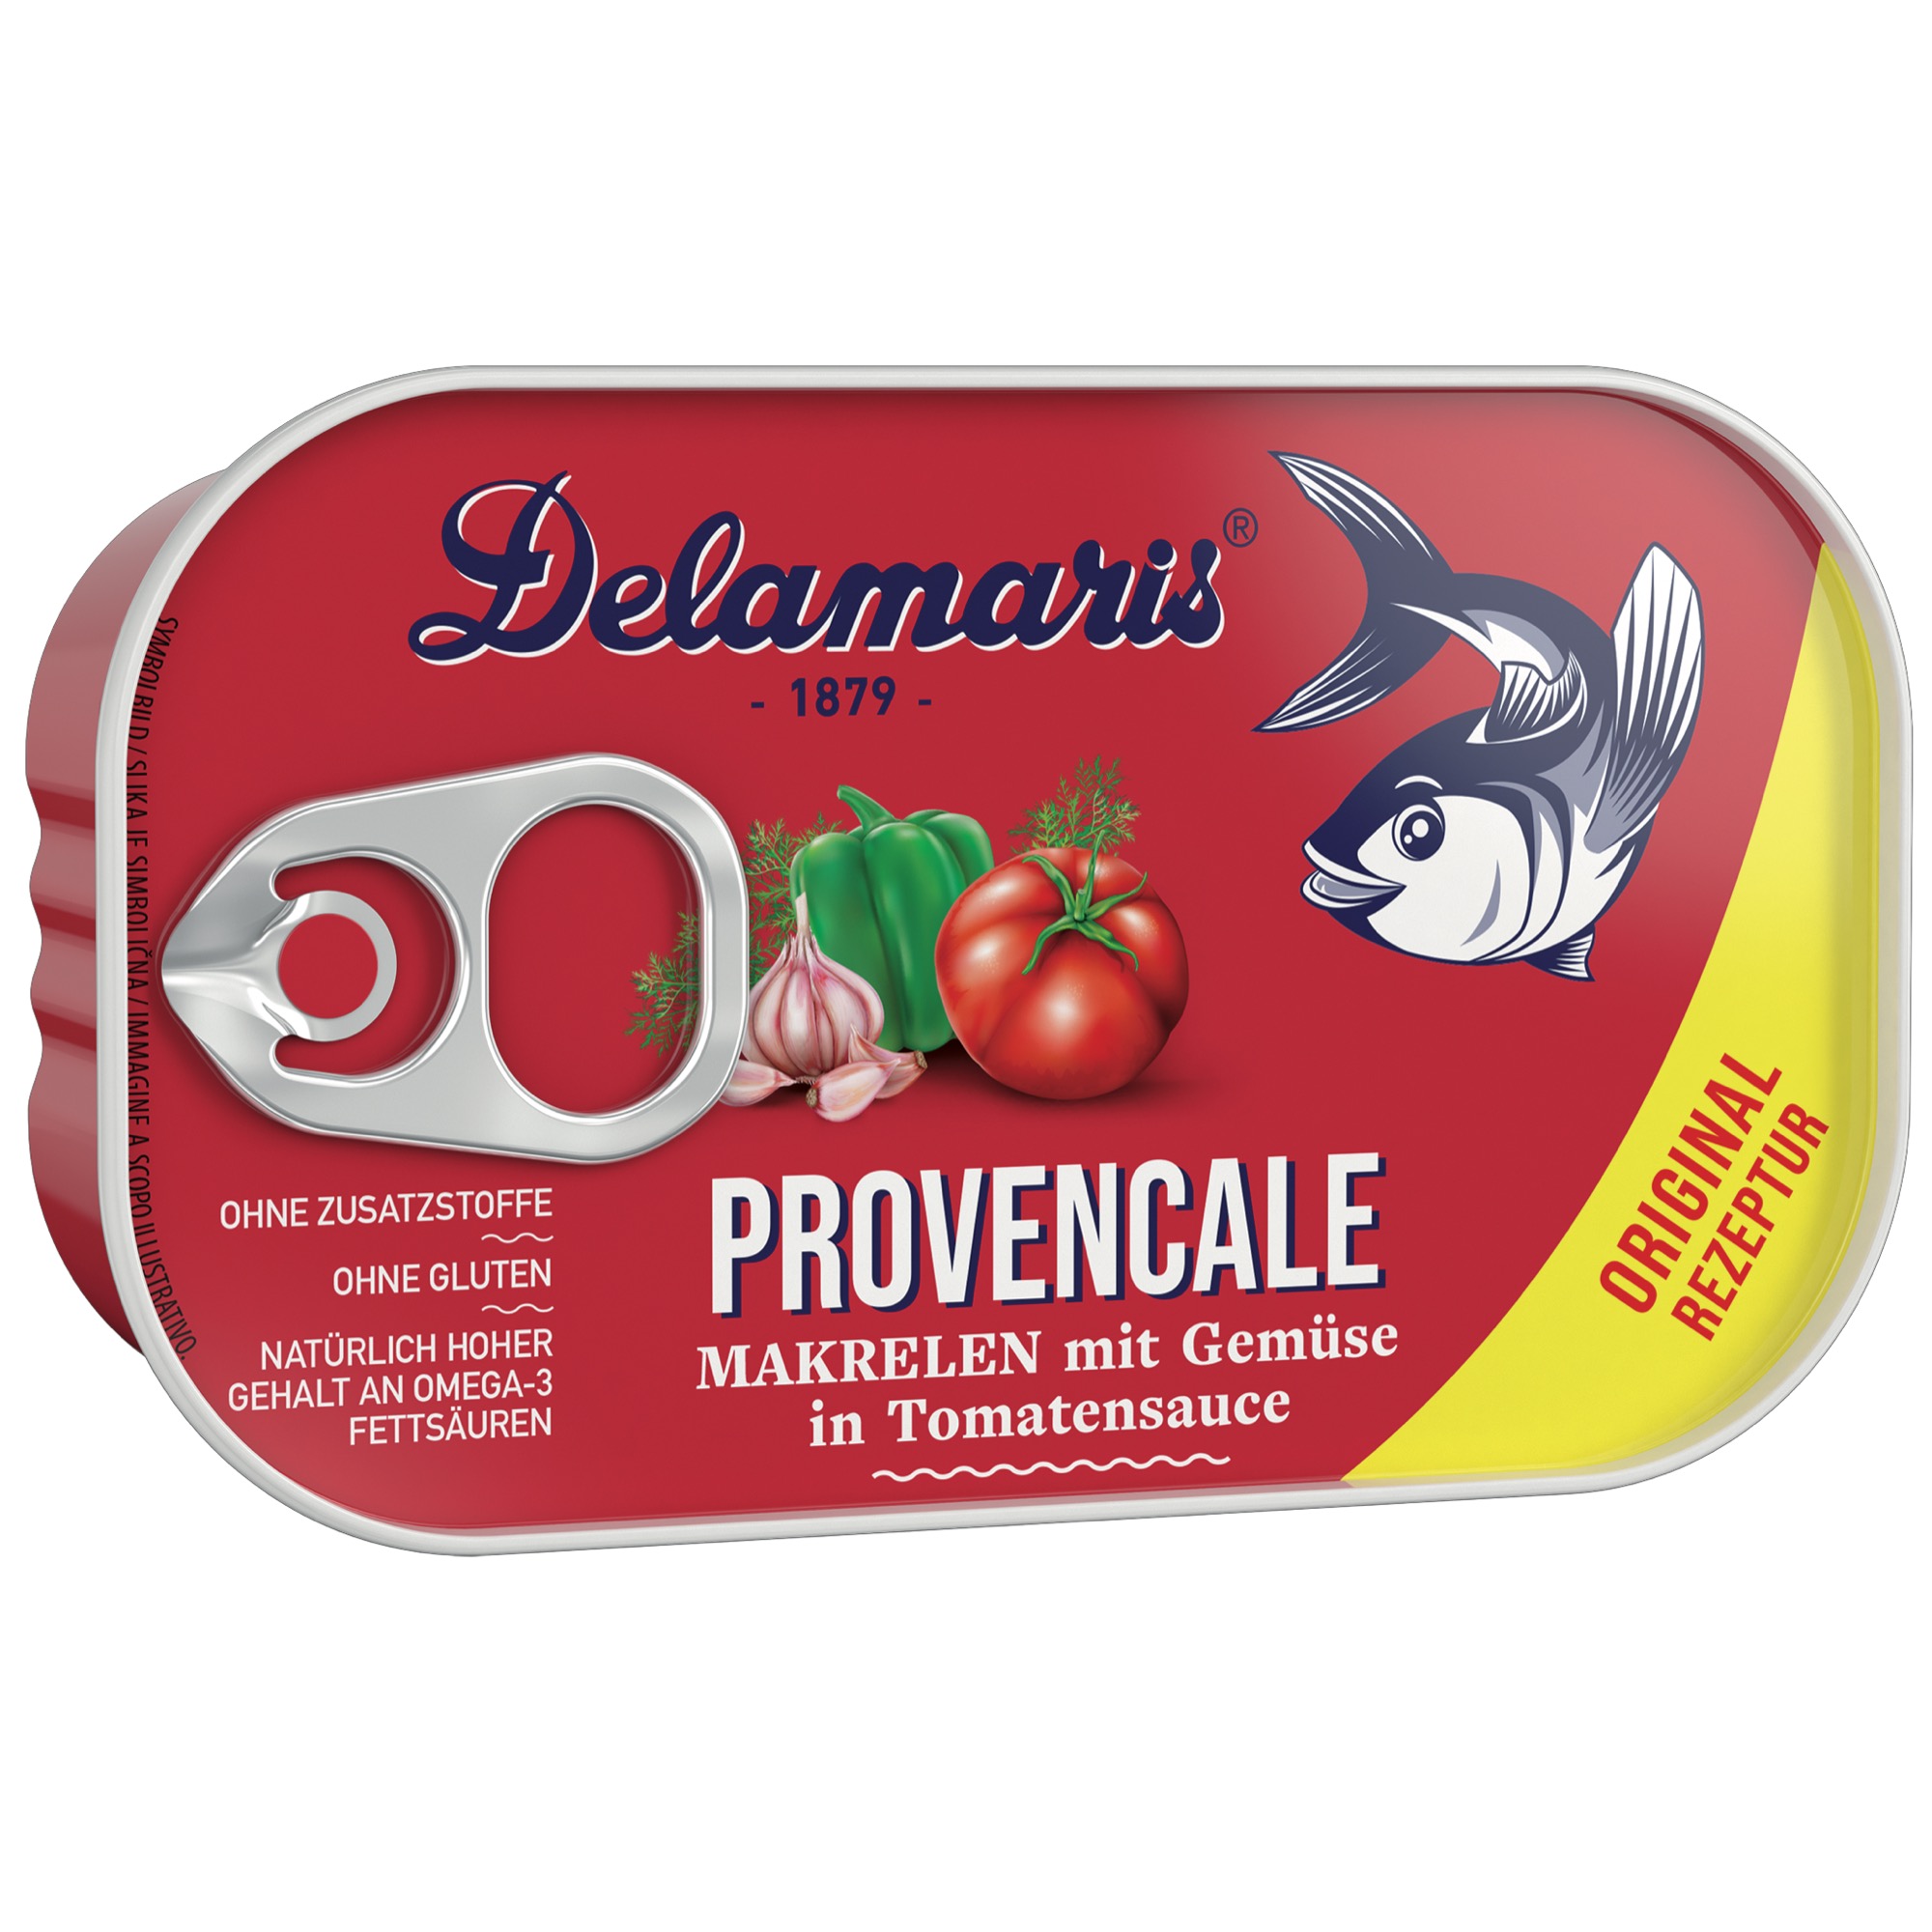 Delamaris makrely Provencale 125g